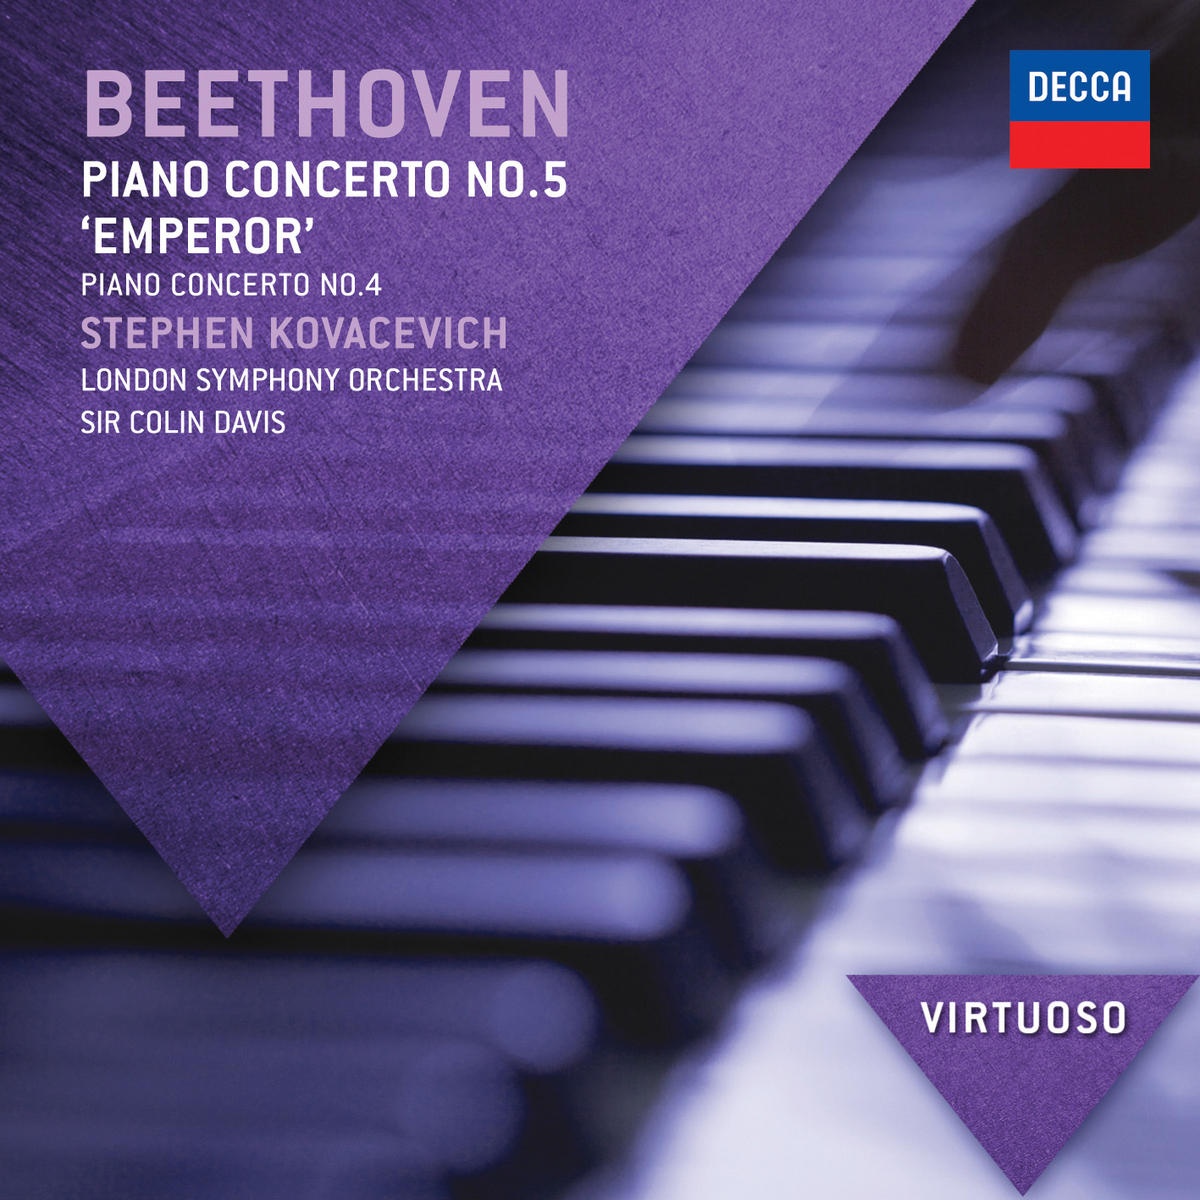 Beethoven: Piano Concerto No. 5 "Emperor" & Piano Concerto No. 4